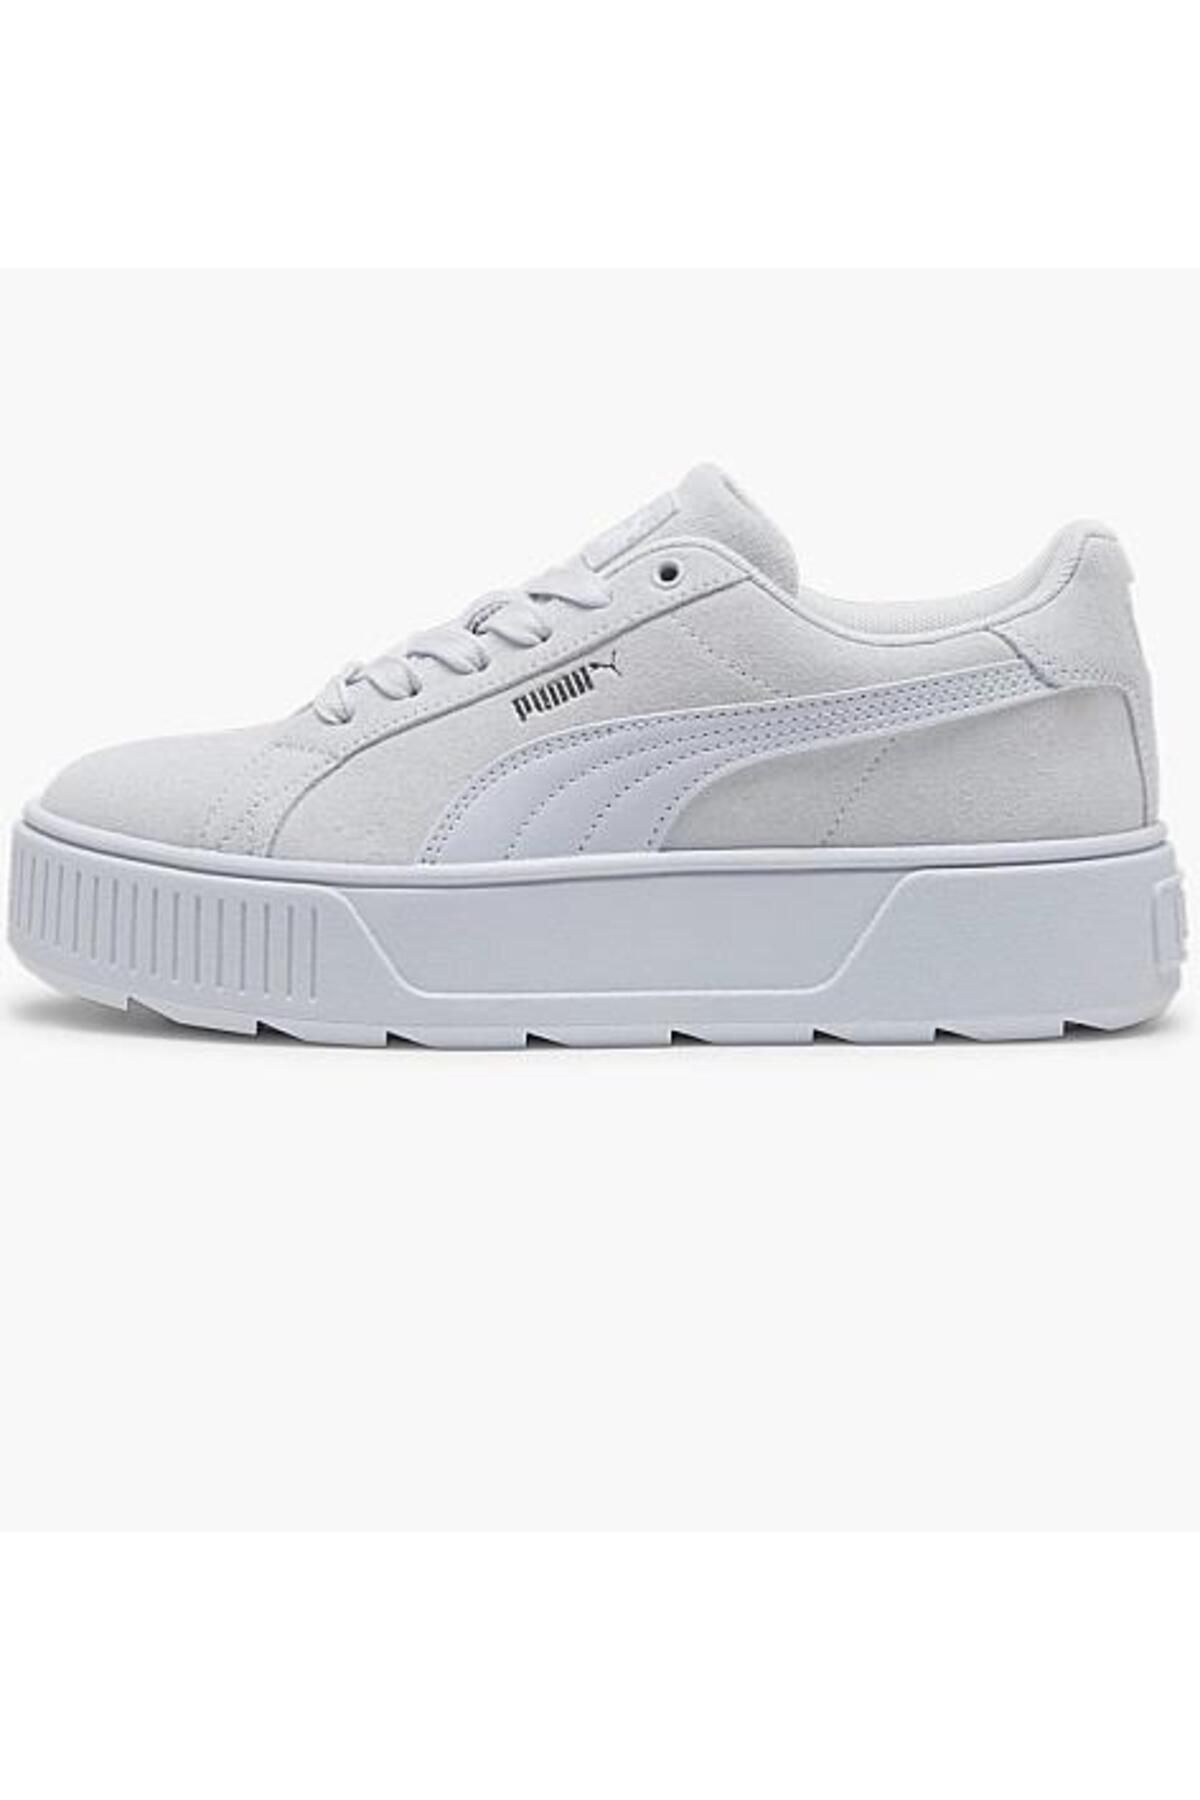 Puma Karmen Kadın Silver Sneaker Ayakkabı 38461416